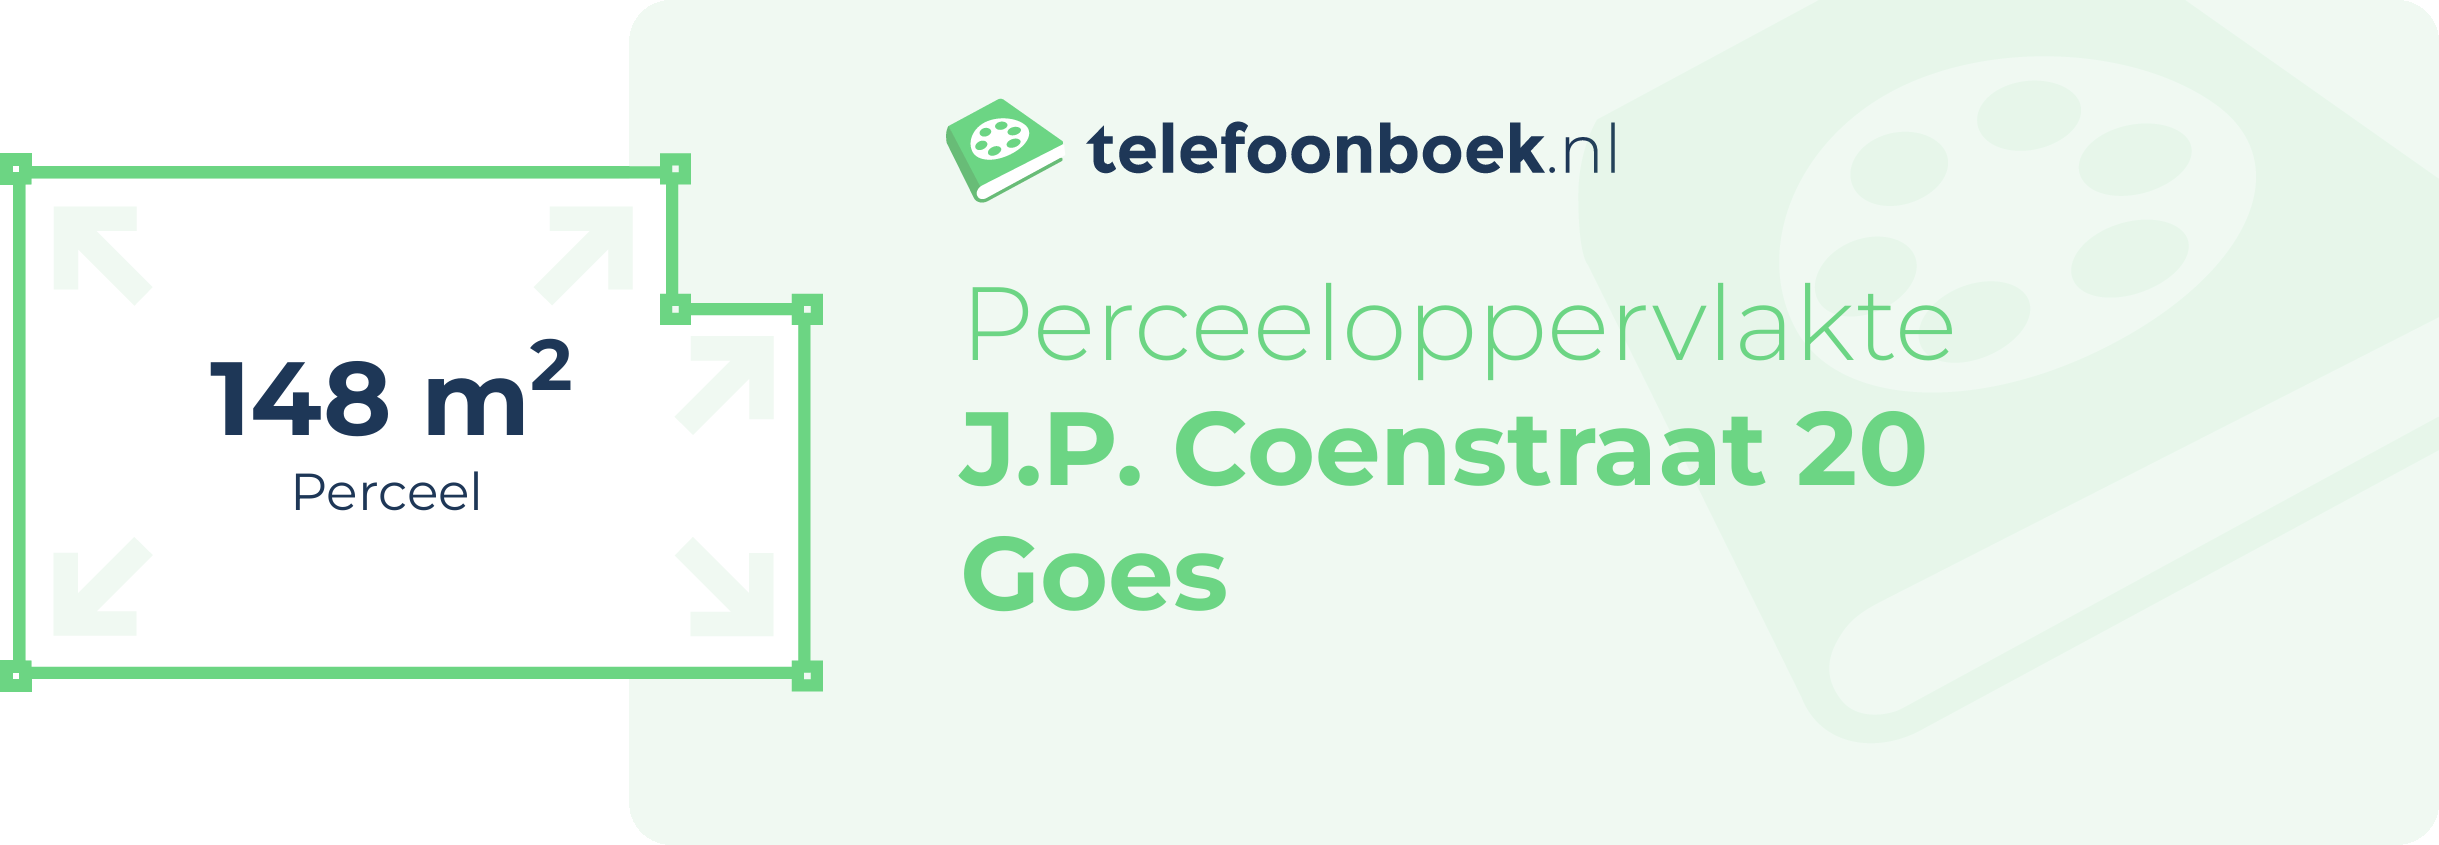 Perceeloppervlakte J.P. Coenstraat 20 Goes